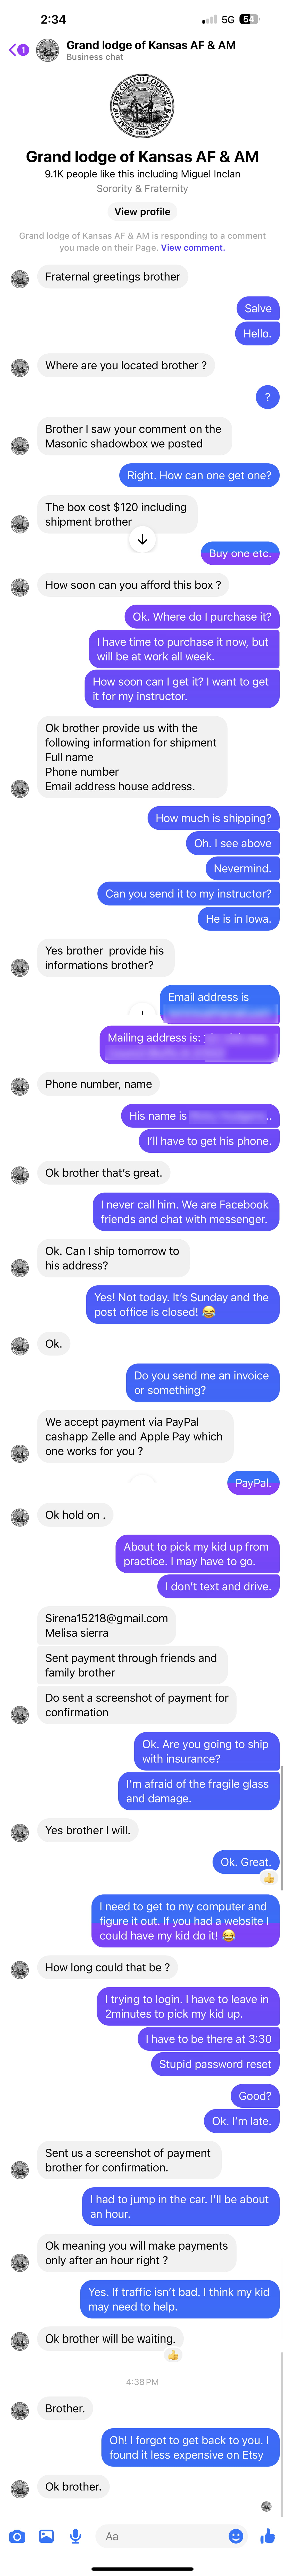 Facebook Masonic Scam